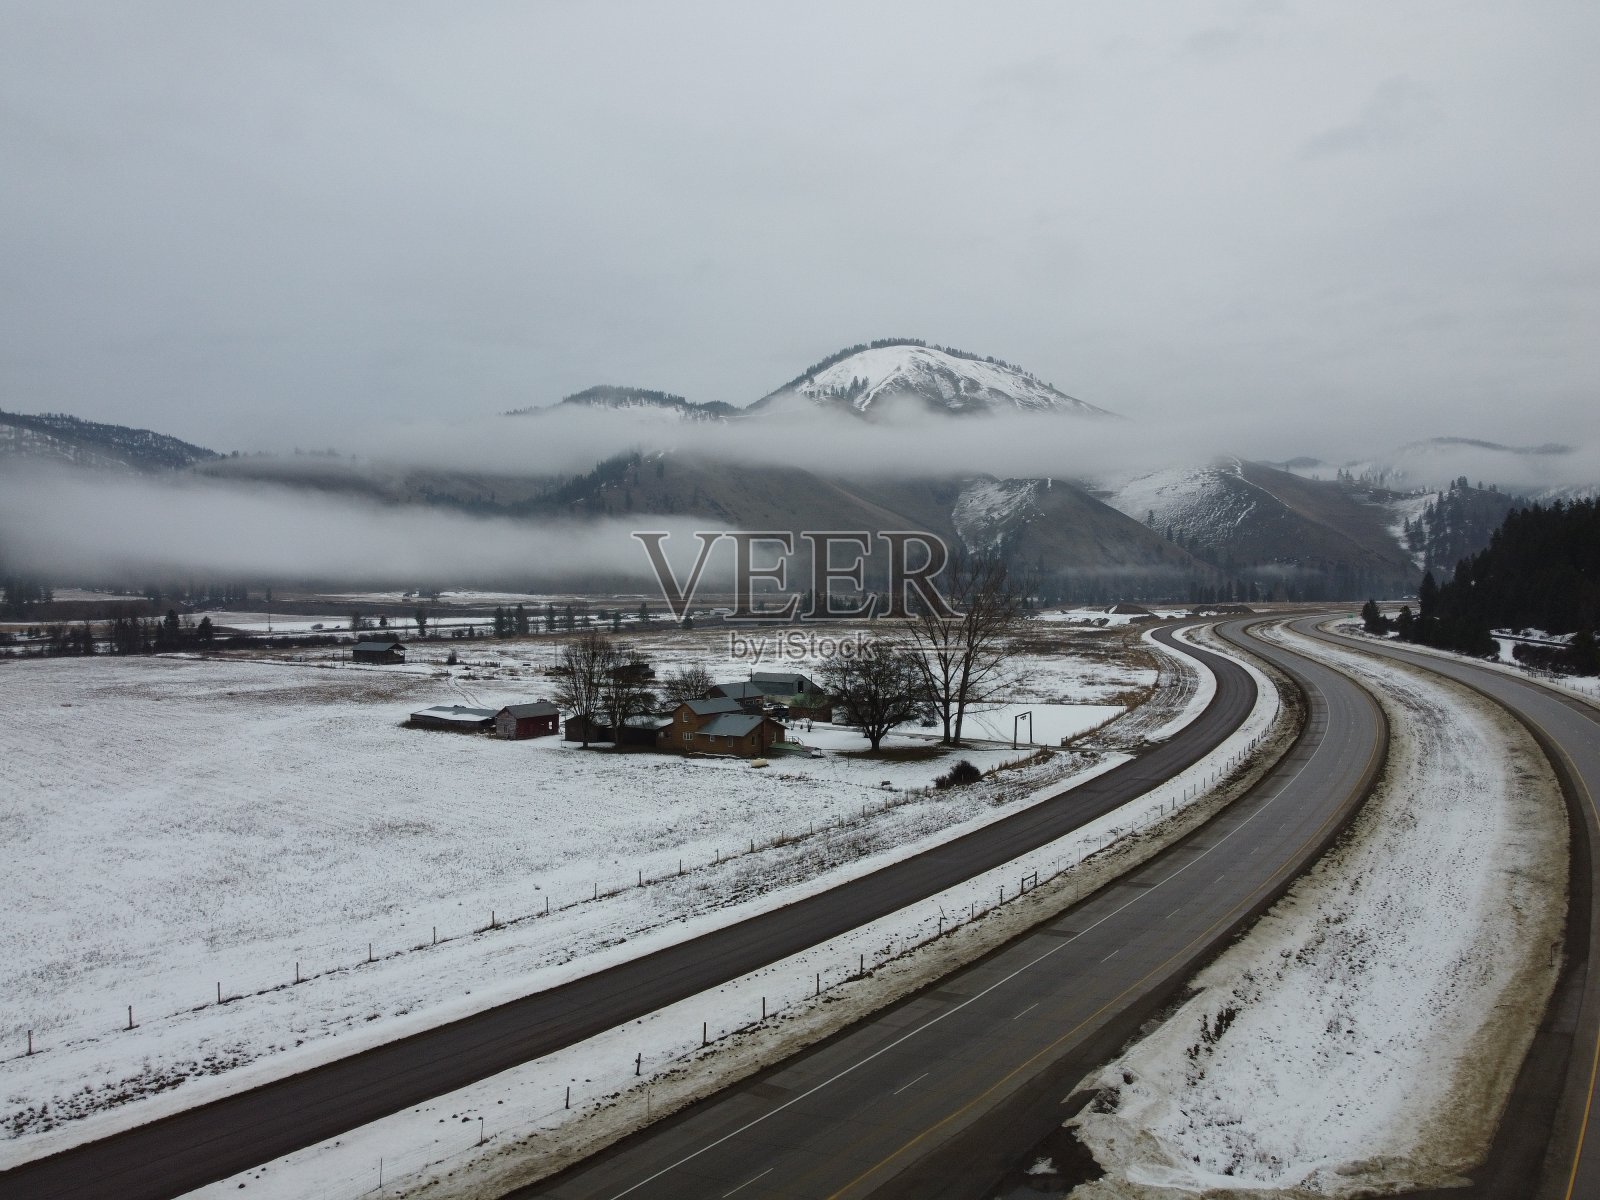 弯弯曲曲的道路通向迷雾笼罩的雪山，前景是牧场的家照片摄影图片